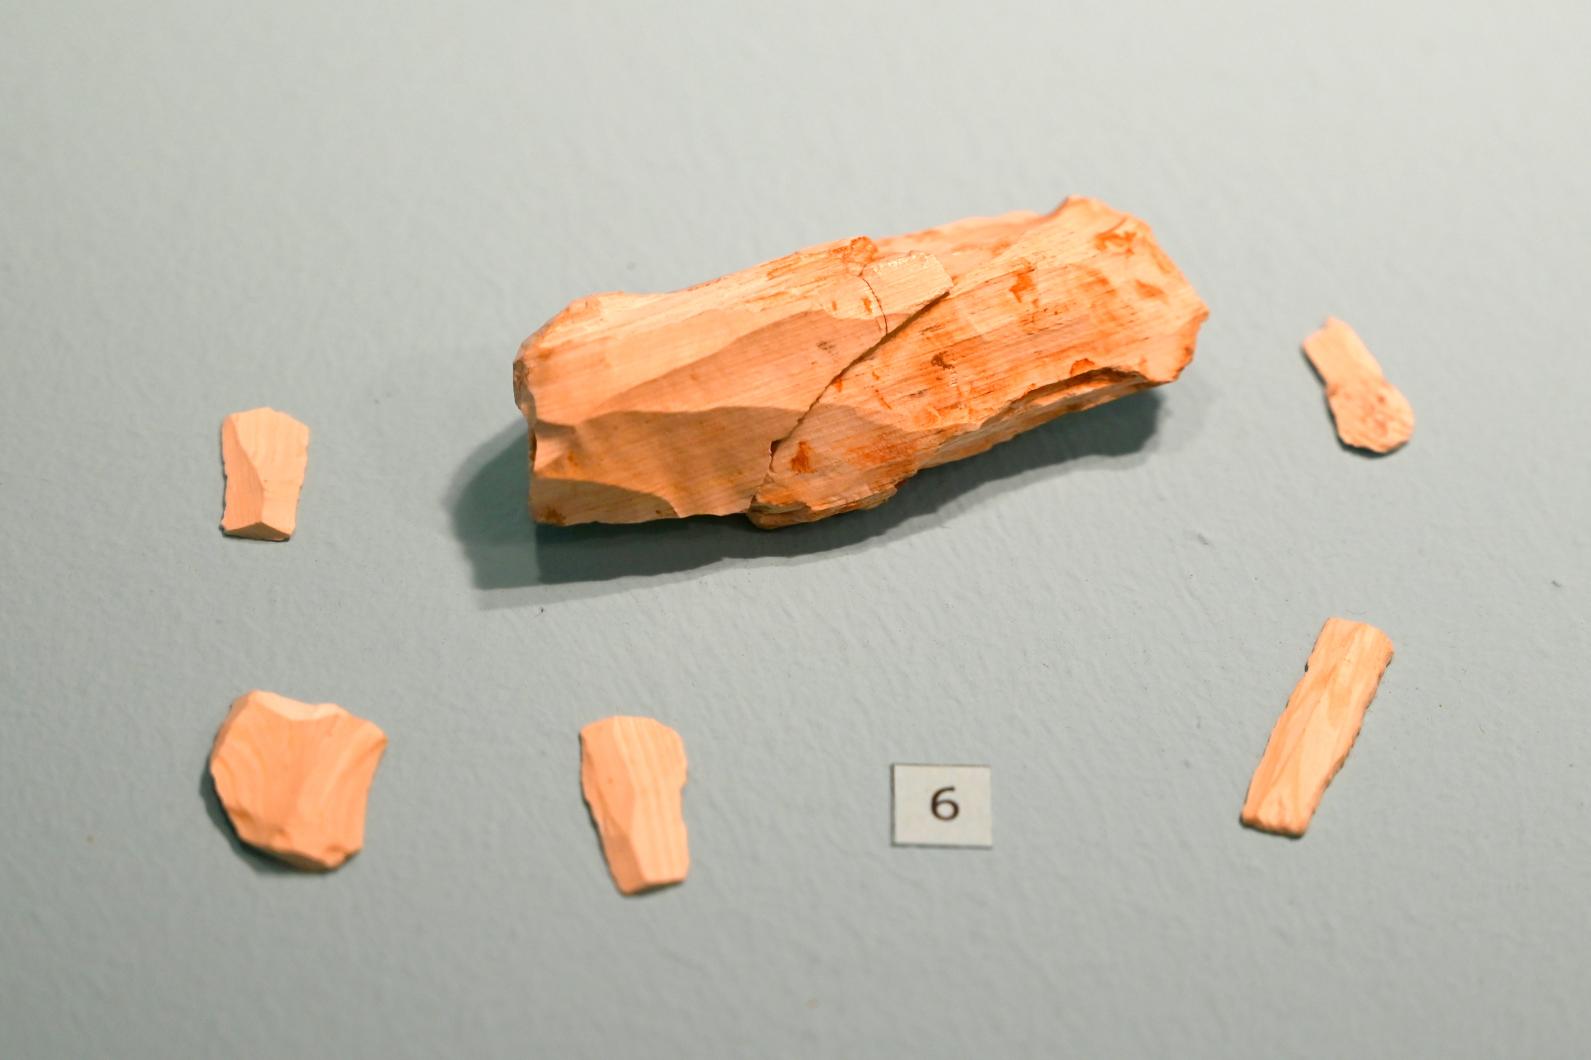 Abschläge, 23000 v. Chr.